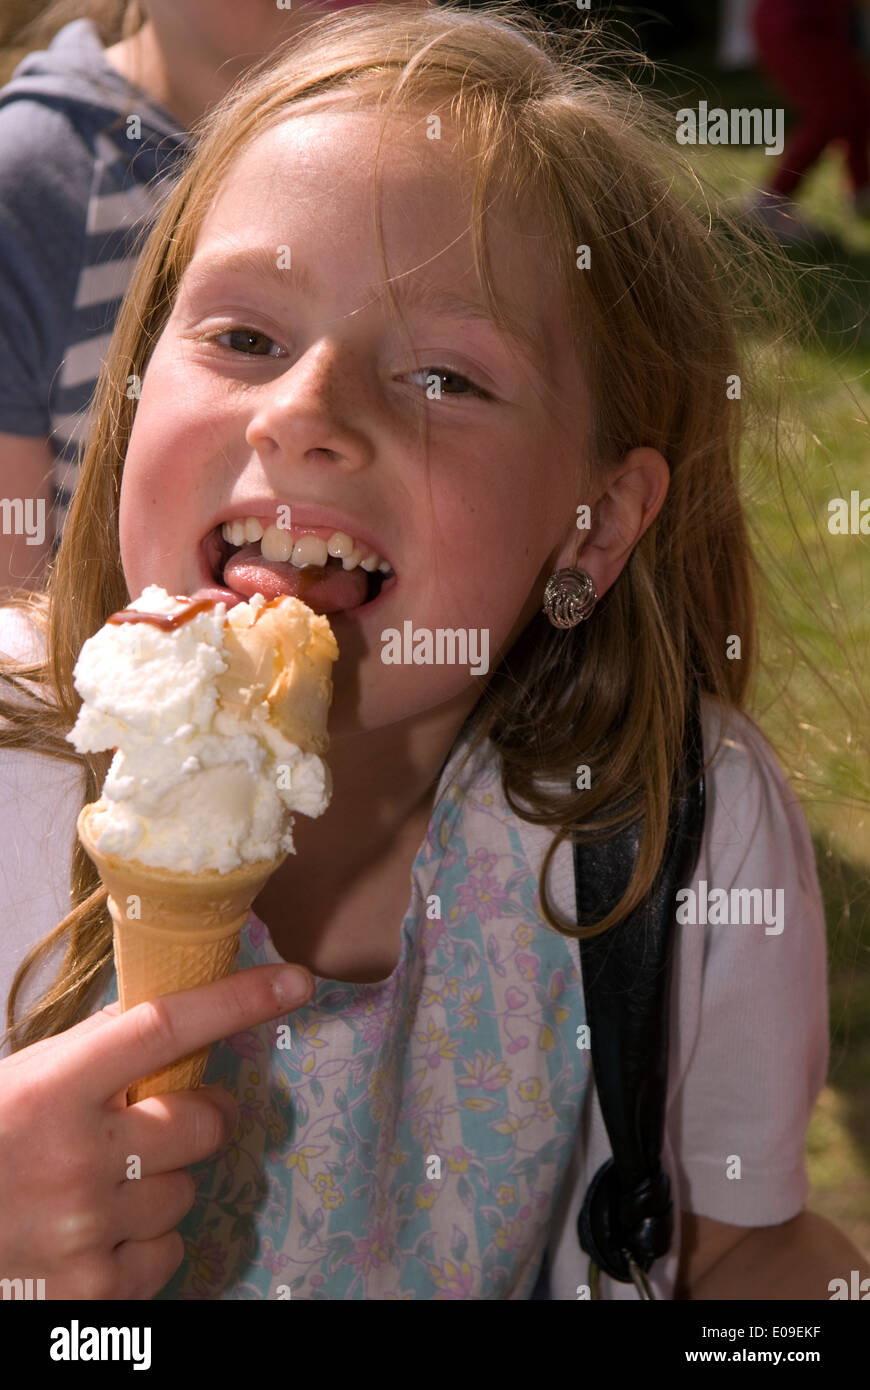 8 anno vecchia ragazza godendo di un gelato a oakhanger può fayre, oakhanger, hampshire, Regno Unito. Foto Stock